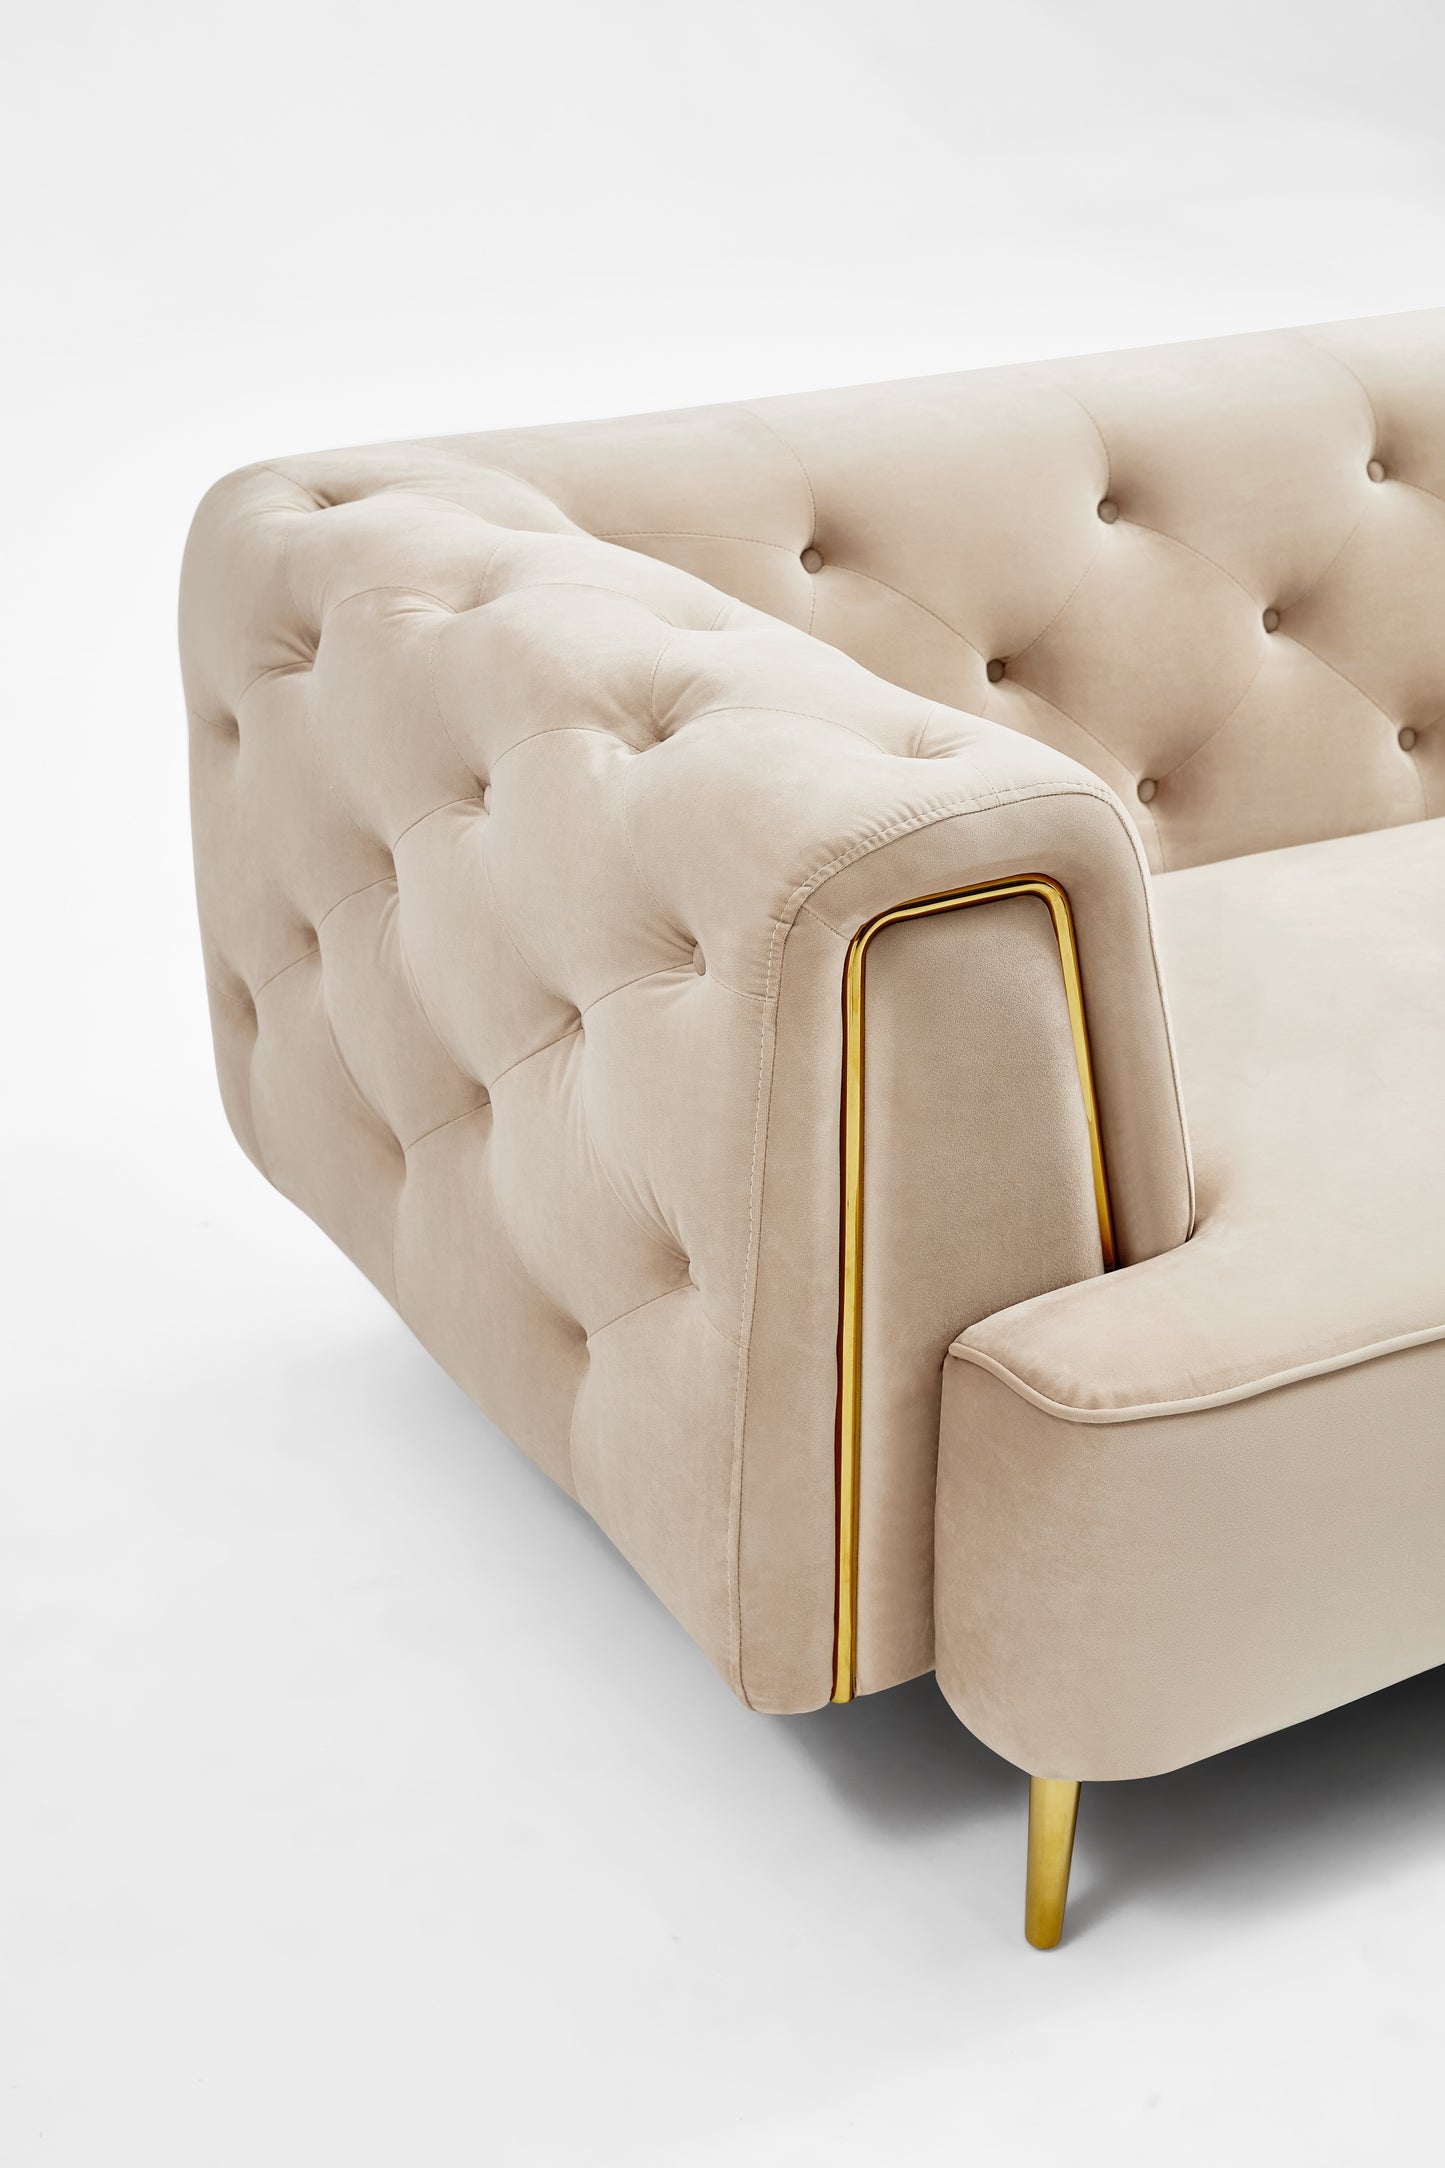 furniture-sofa-cushions-cover-pillow-armchair